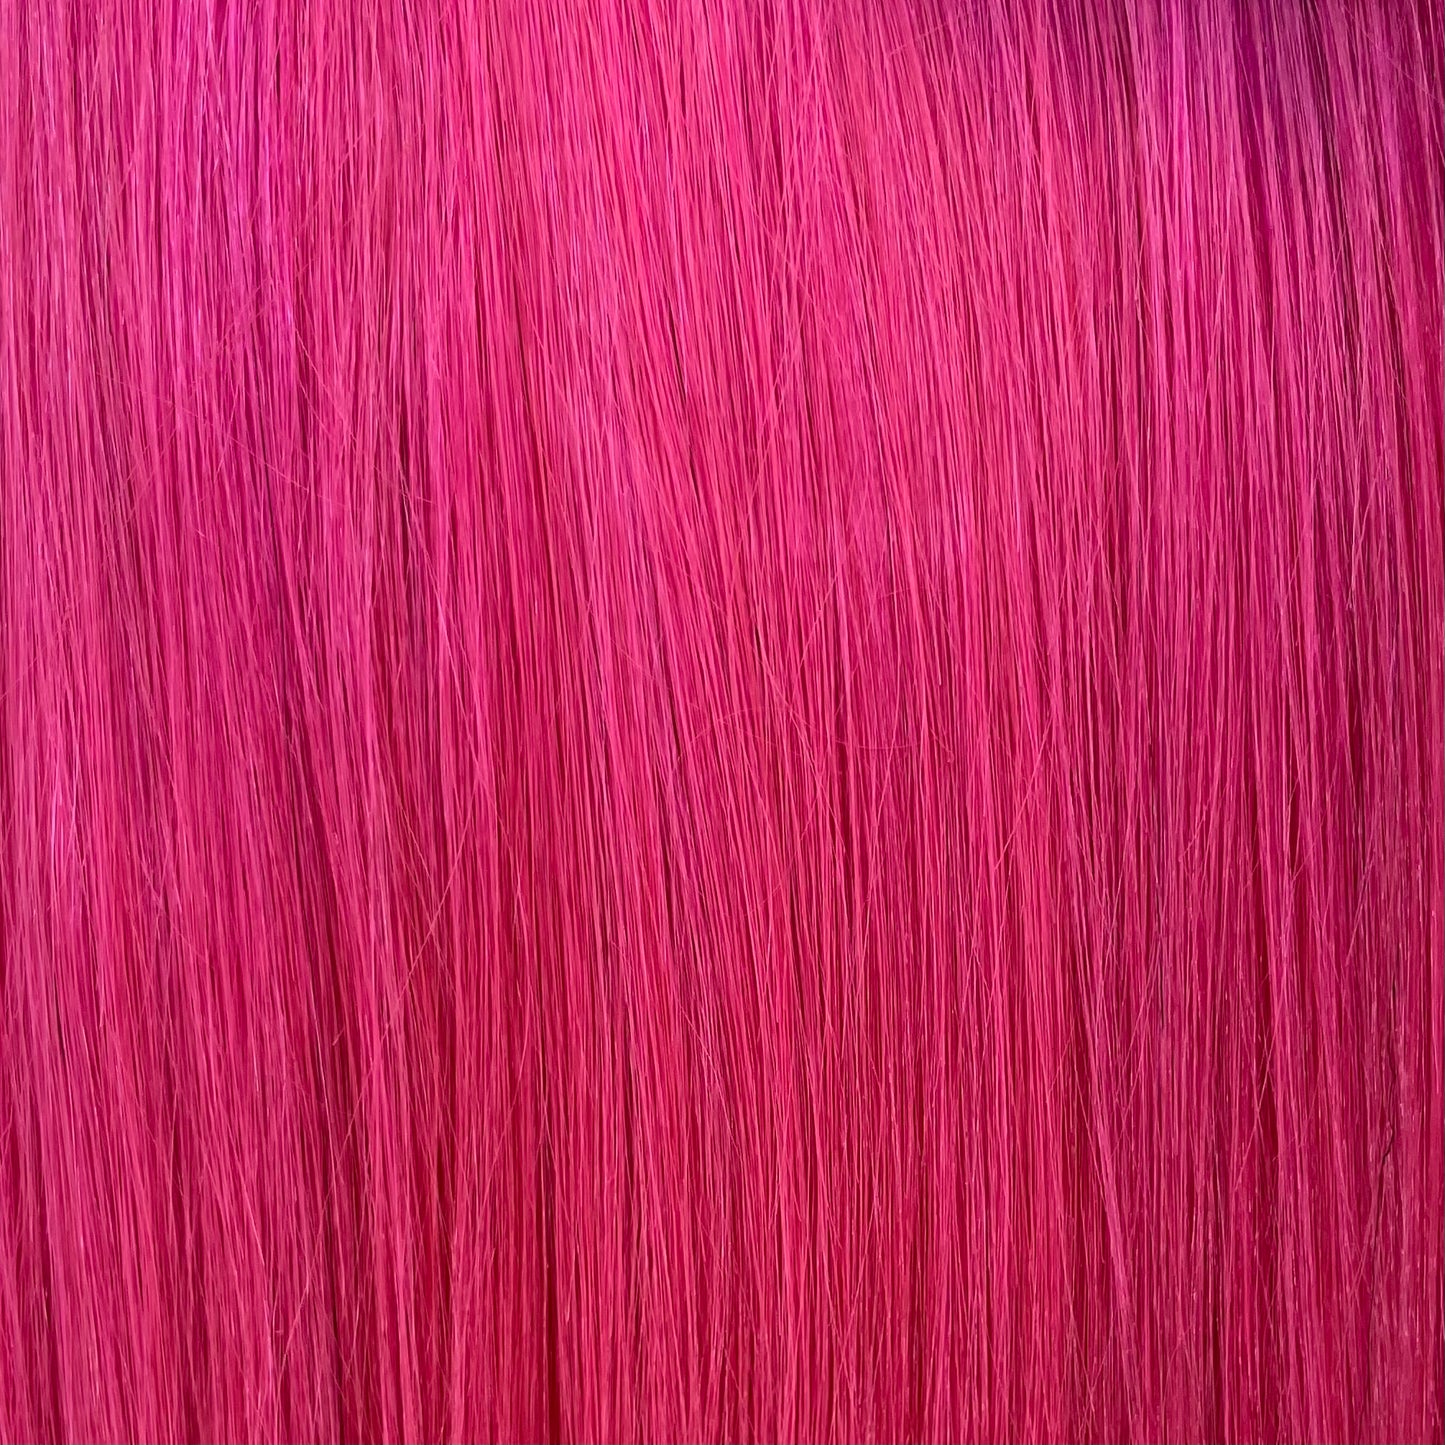 Empire 100% Human Hair by Sensationnel - Yaki Straight (Unique Colors)